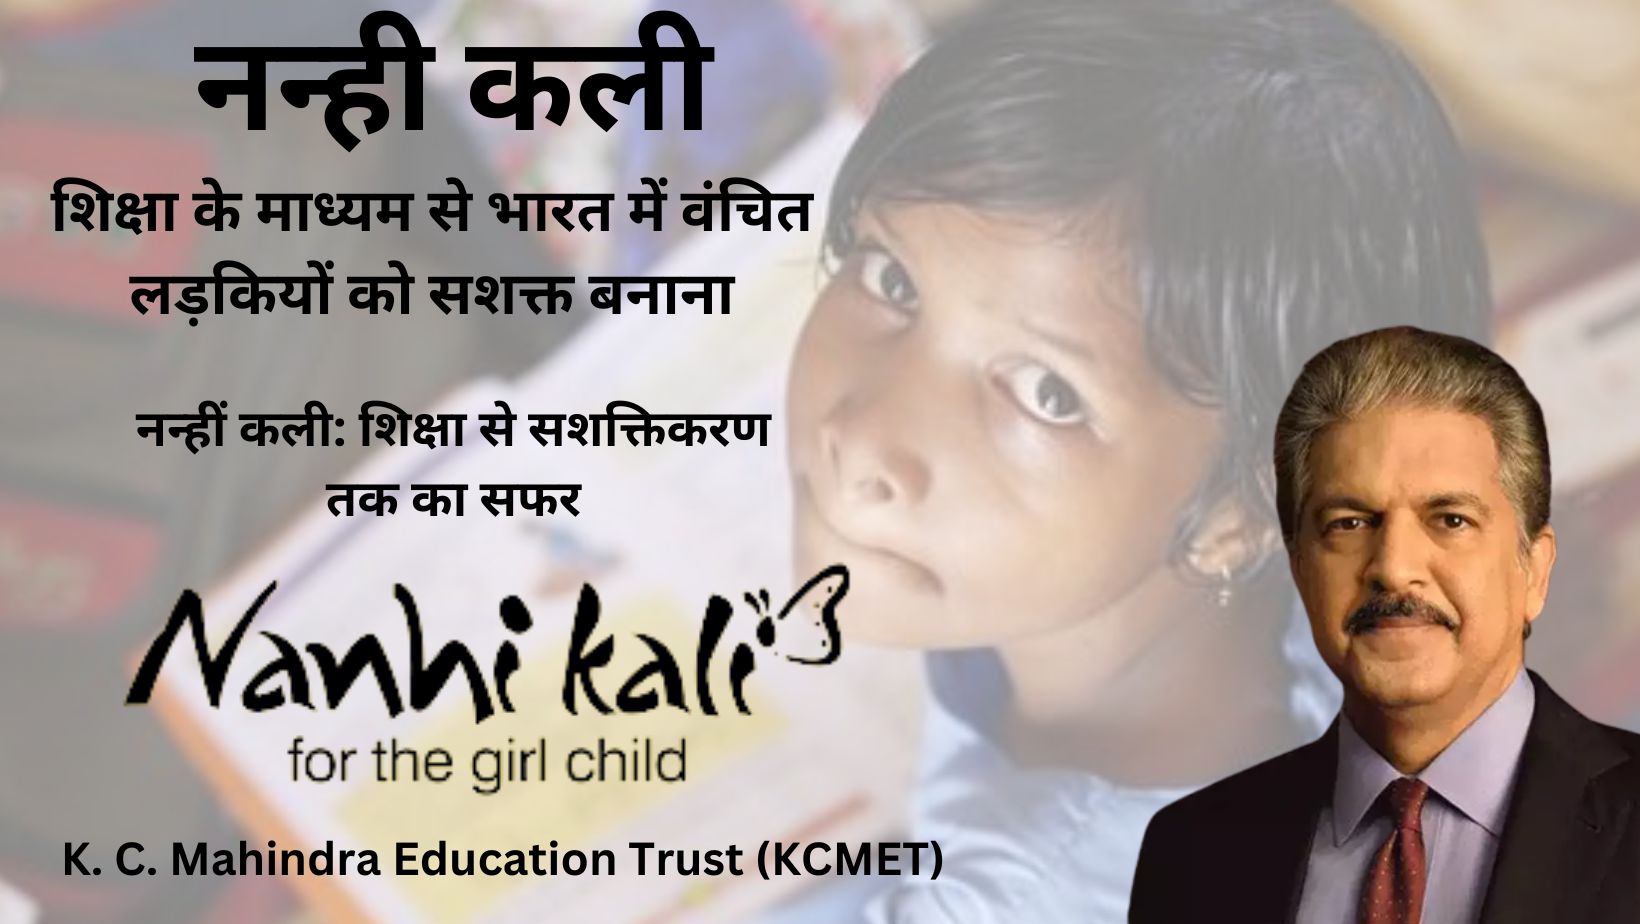 नन्ही कली: शिक्षा के माध्यम से भारत में वंचित लड़कियों को सशक्त बनाना